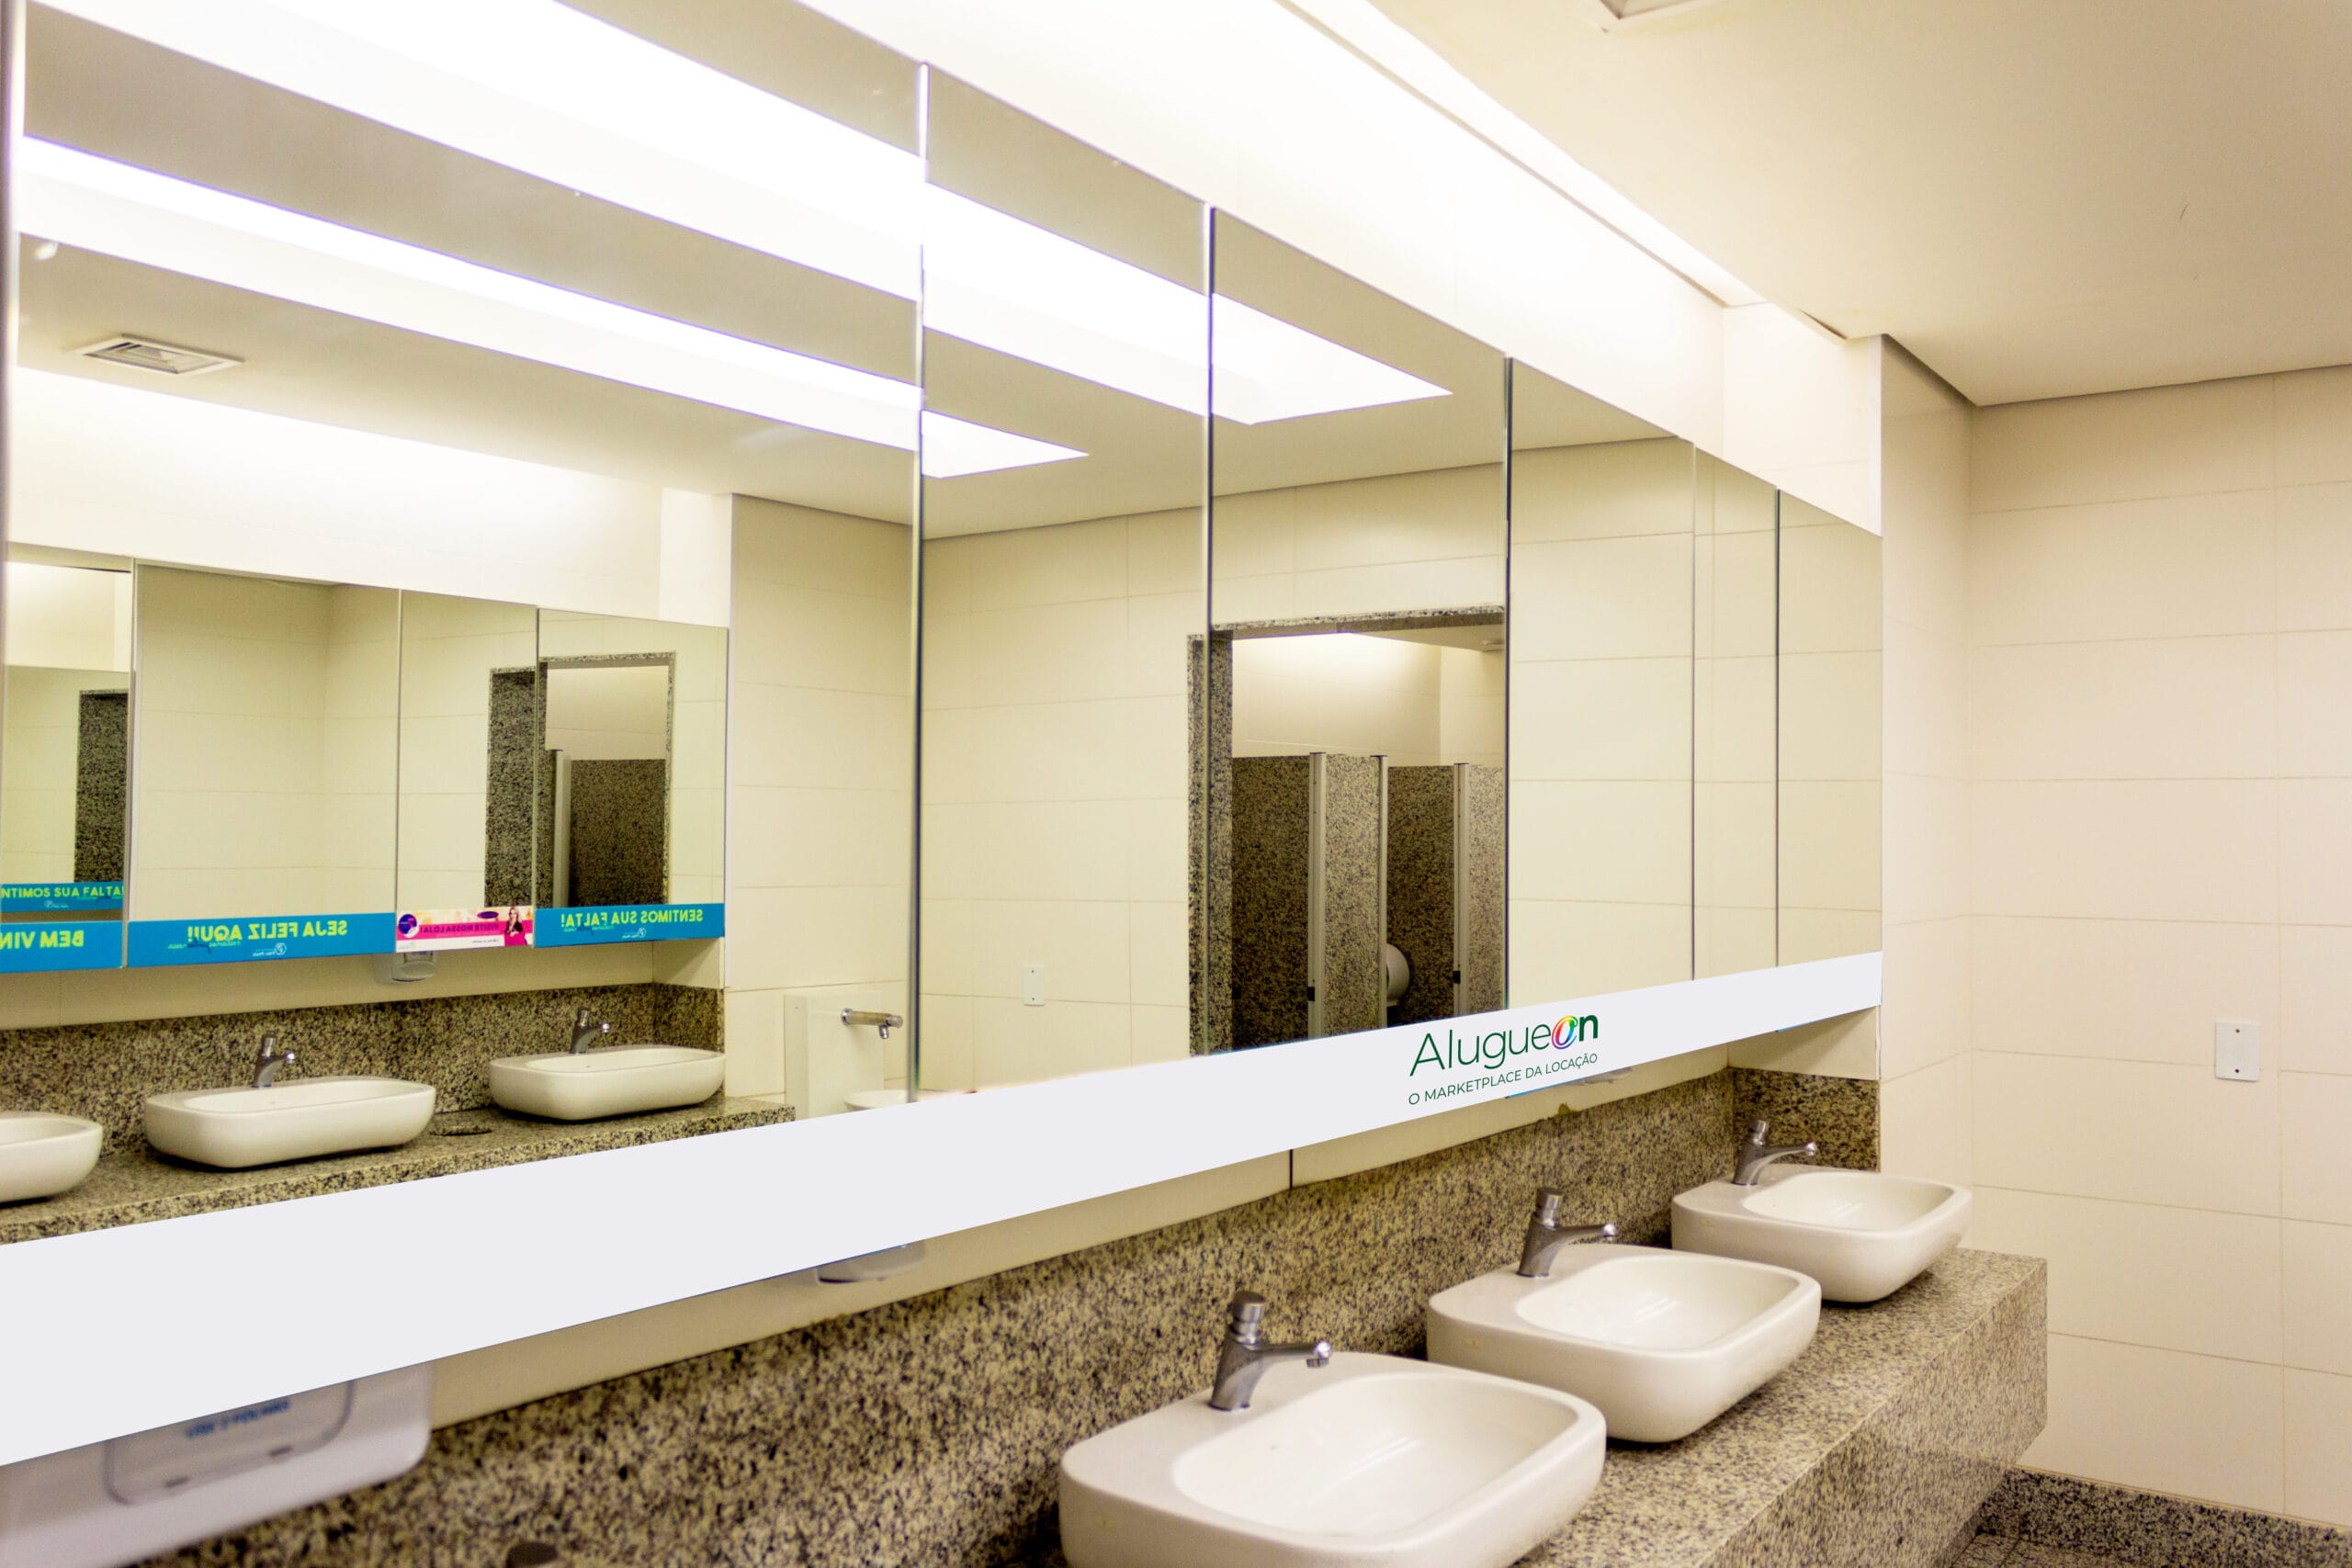 Adesivagem Espelhos dos banheiros